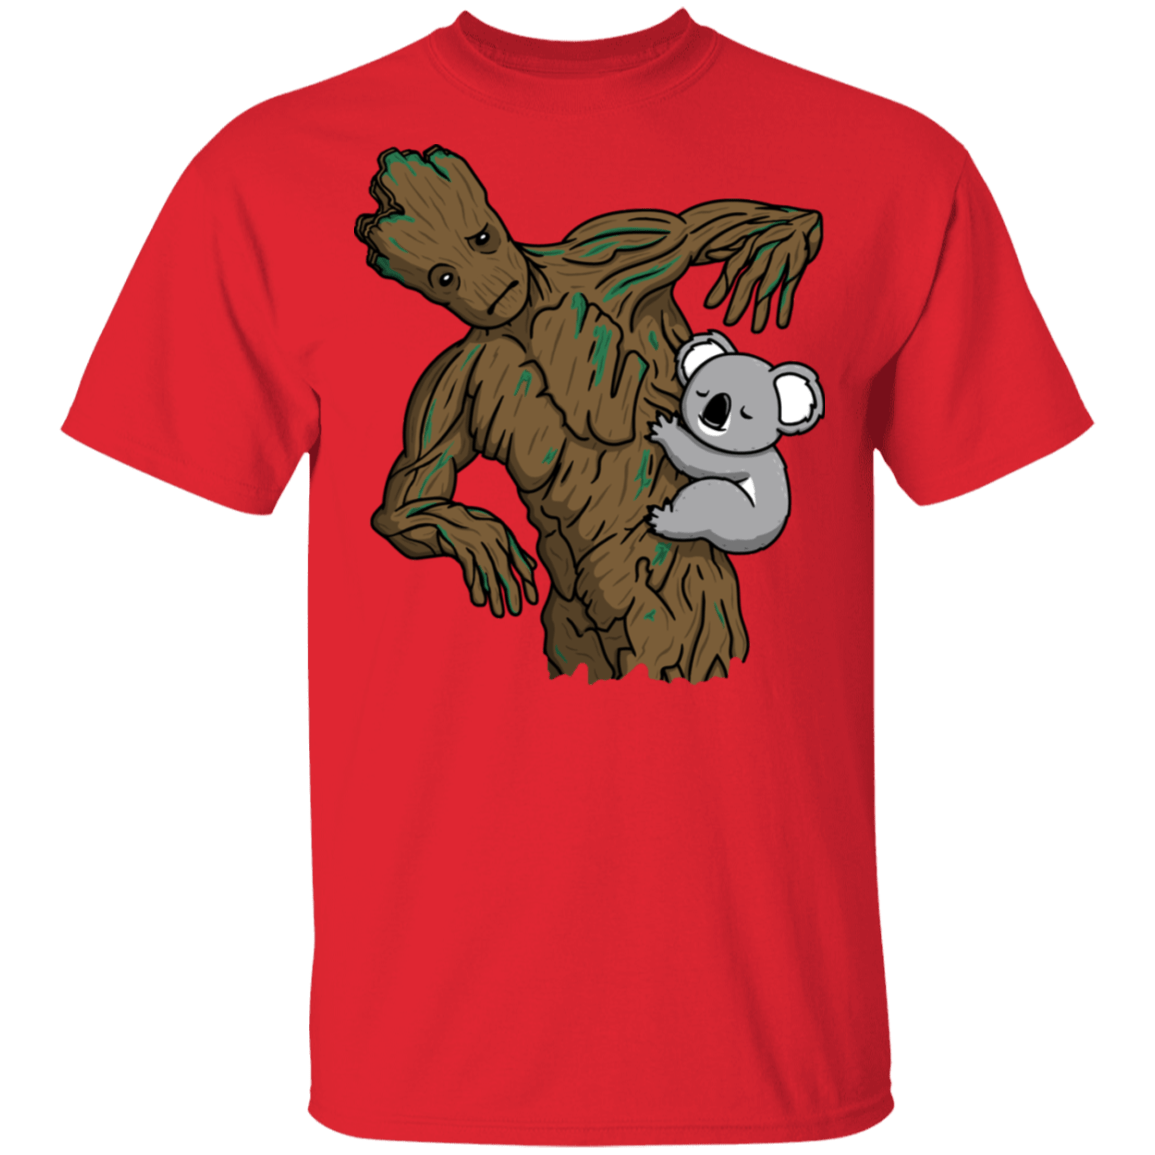 Wrong Tree T-Shirt